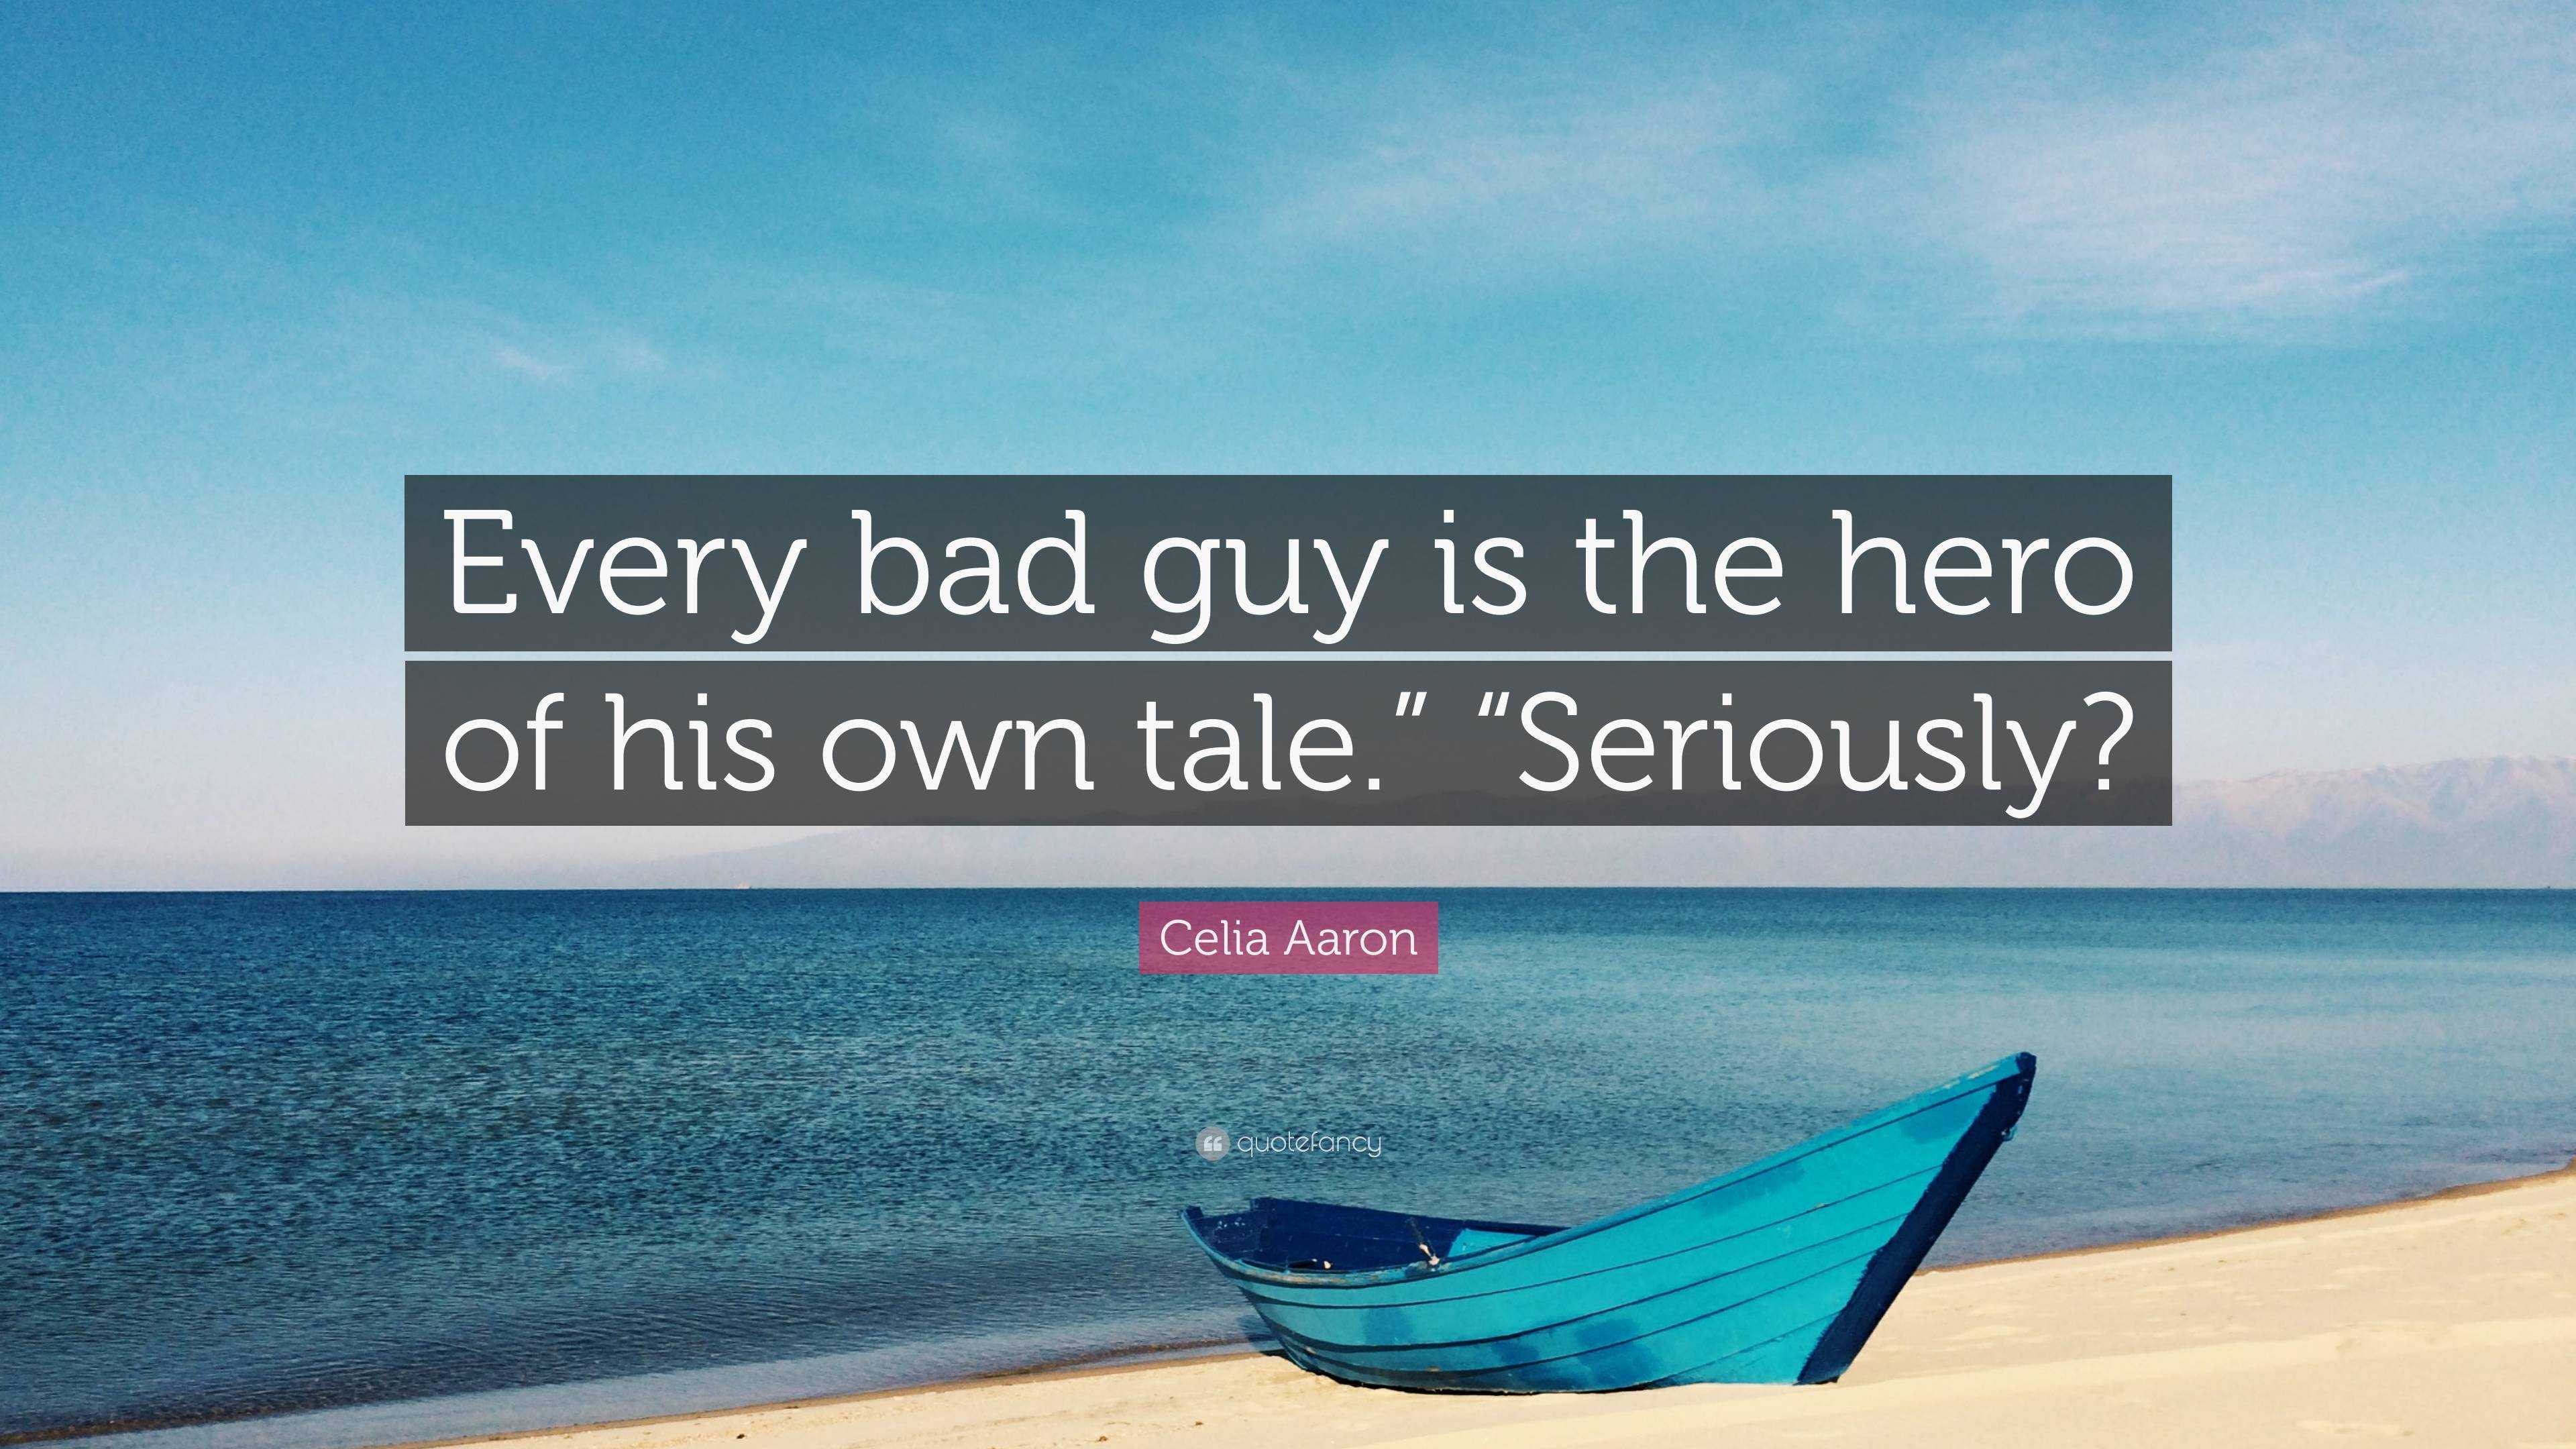 Celia Aaron – The Bad Guy